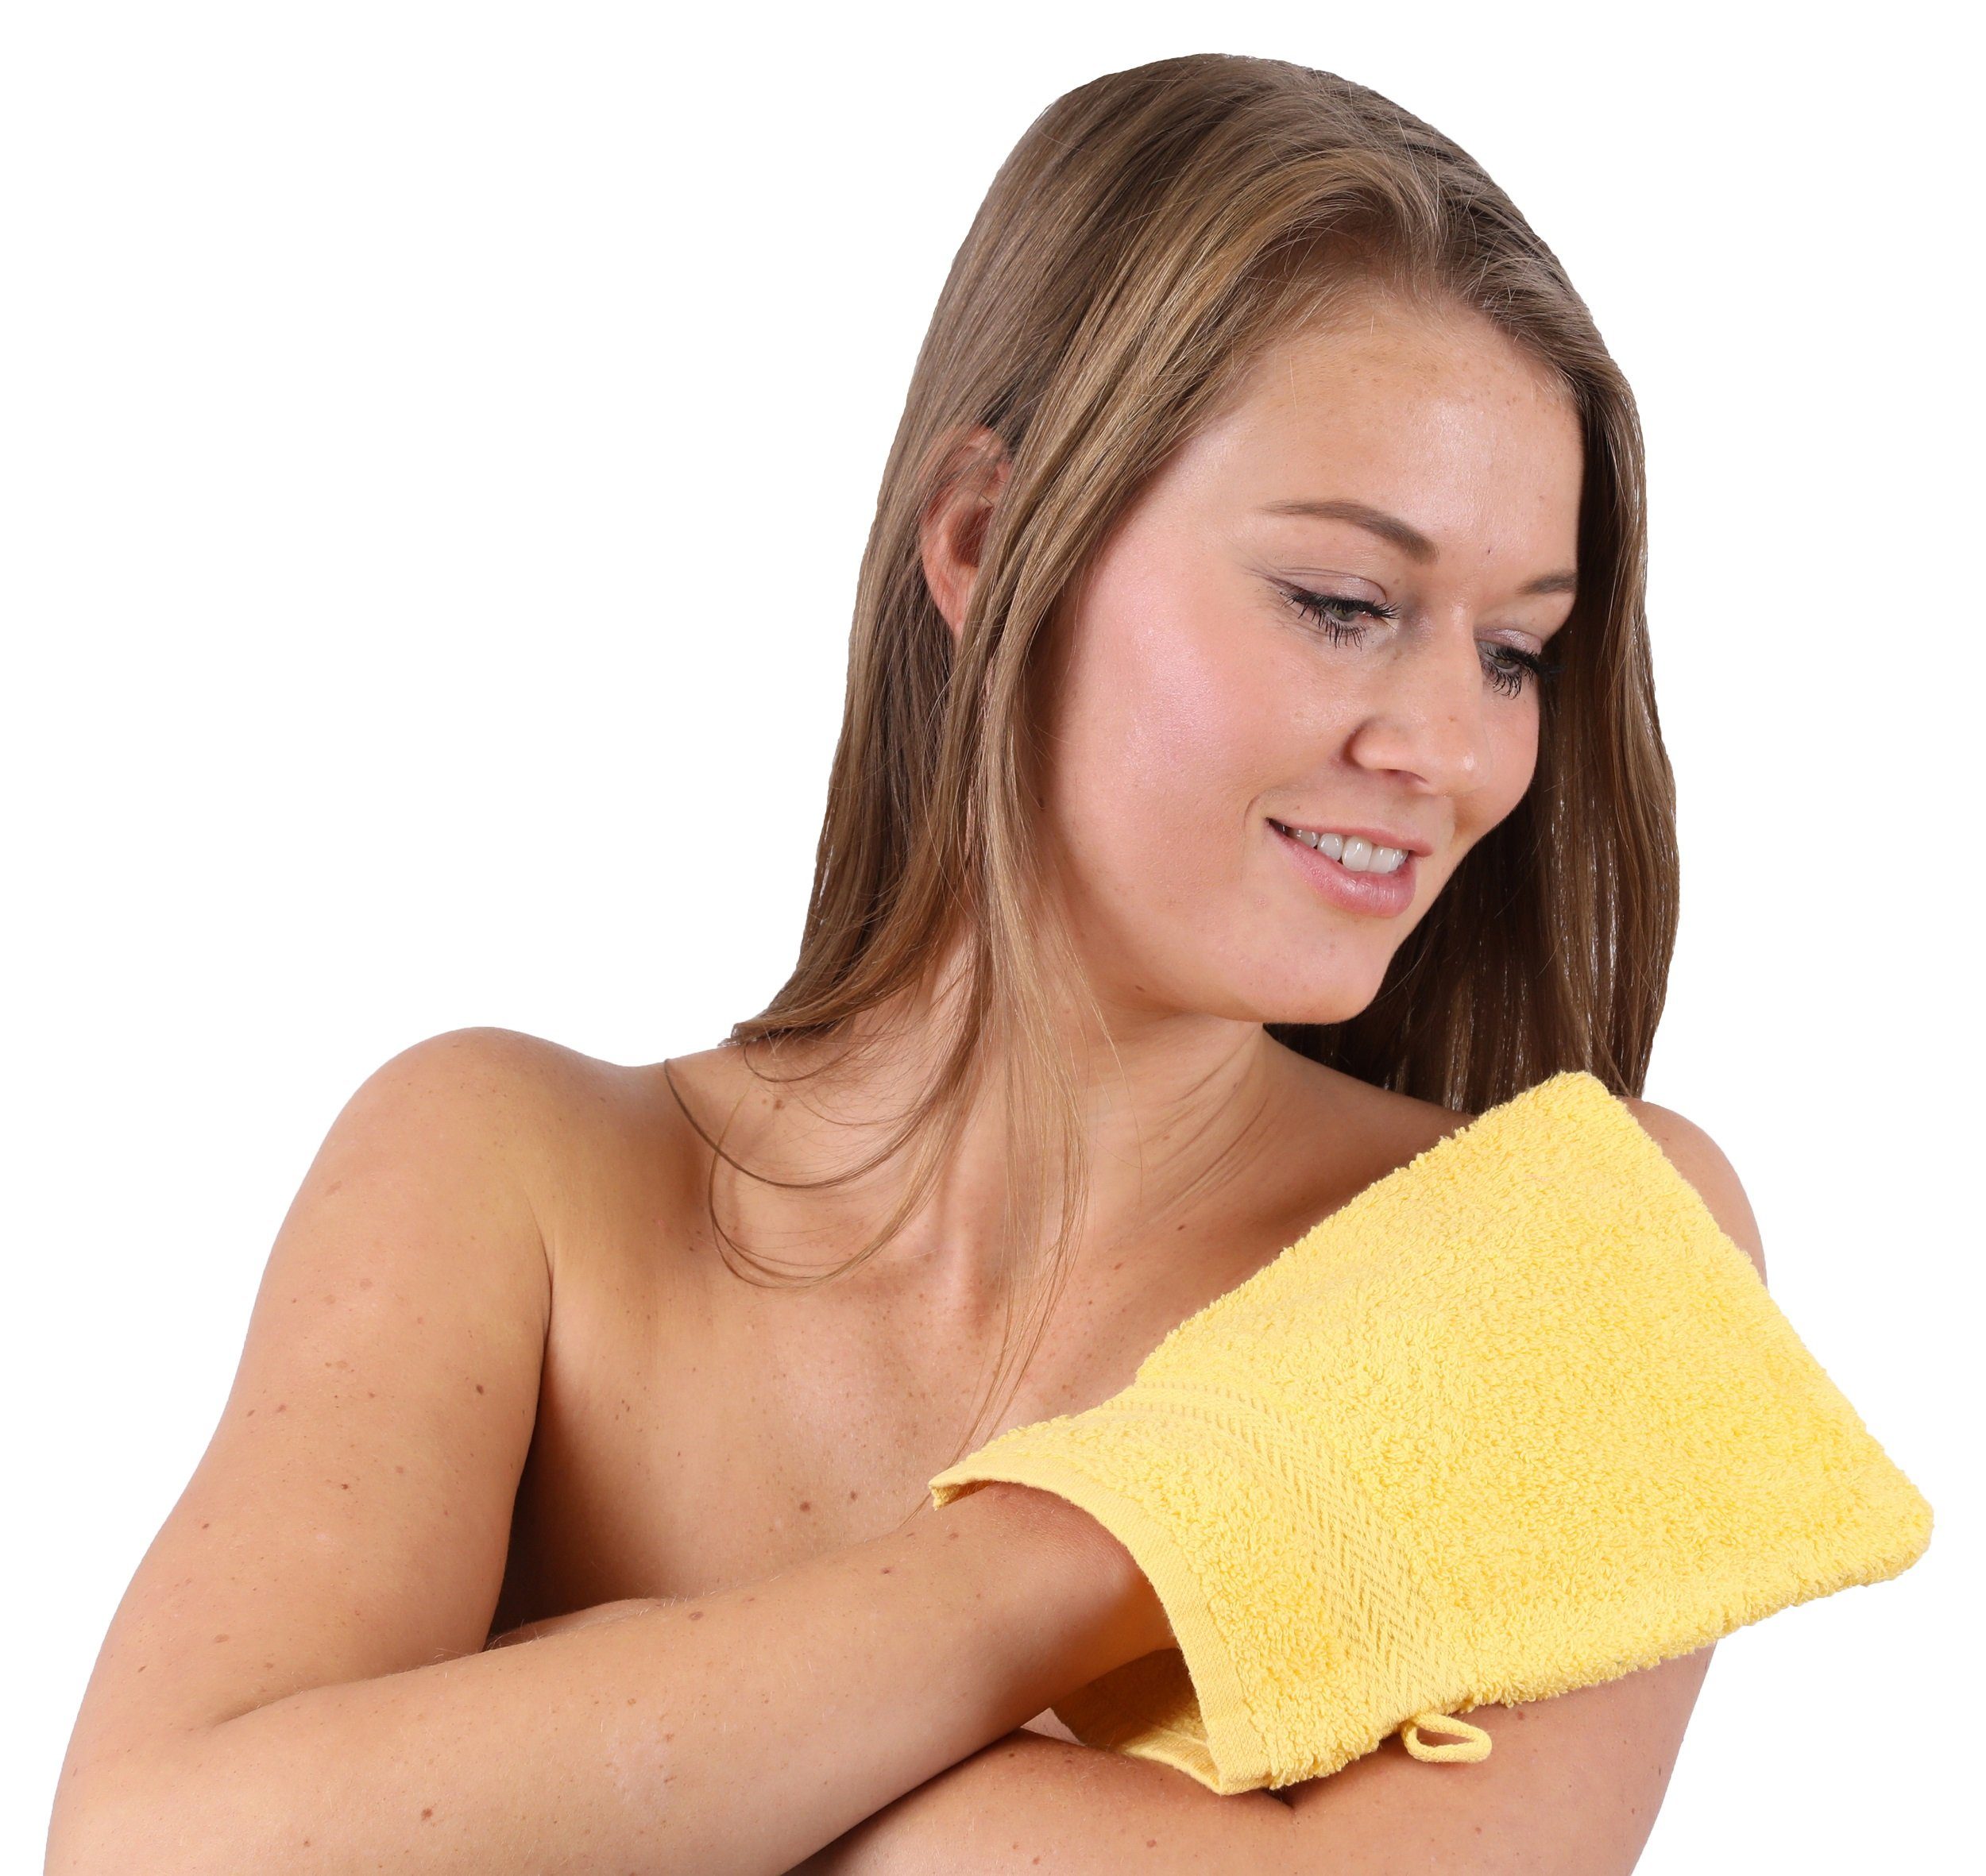 Betz Handtuch Set 10-TLG. Gelb Handtuch-Set Premium & 100% Altrosa, Baumwolle, (10-tlg) Farbe